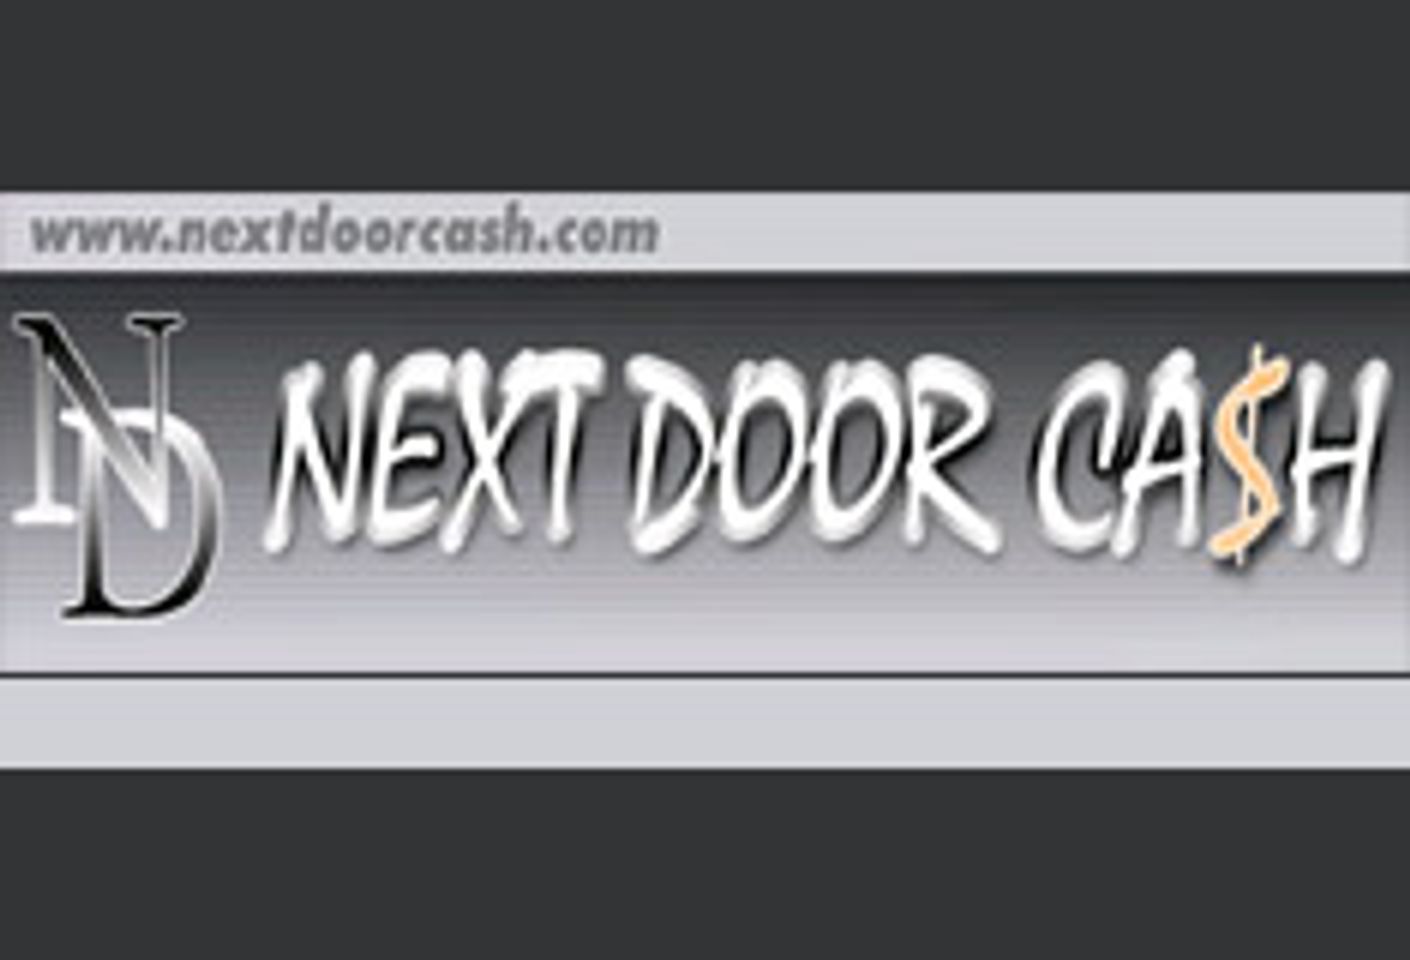 NextDoorCash Announces Affiliate Program